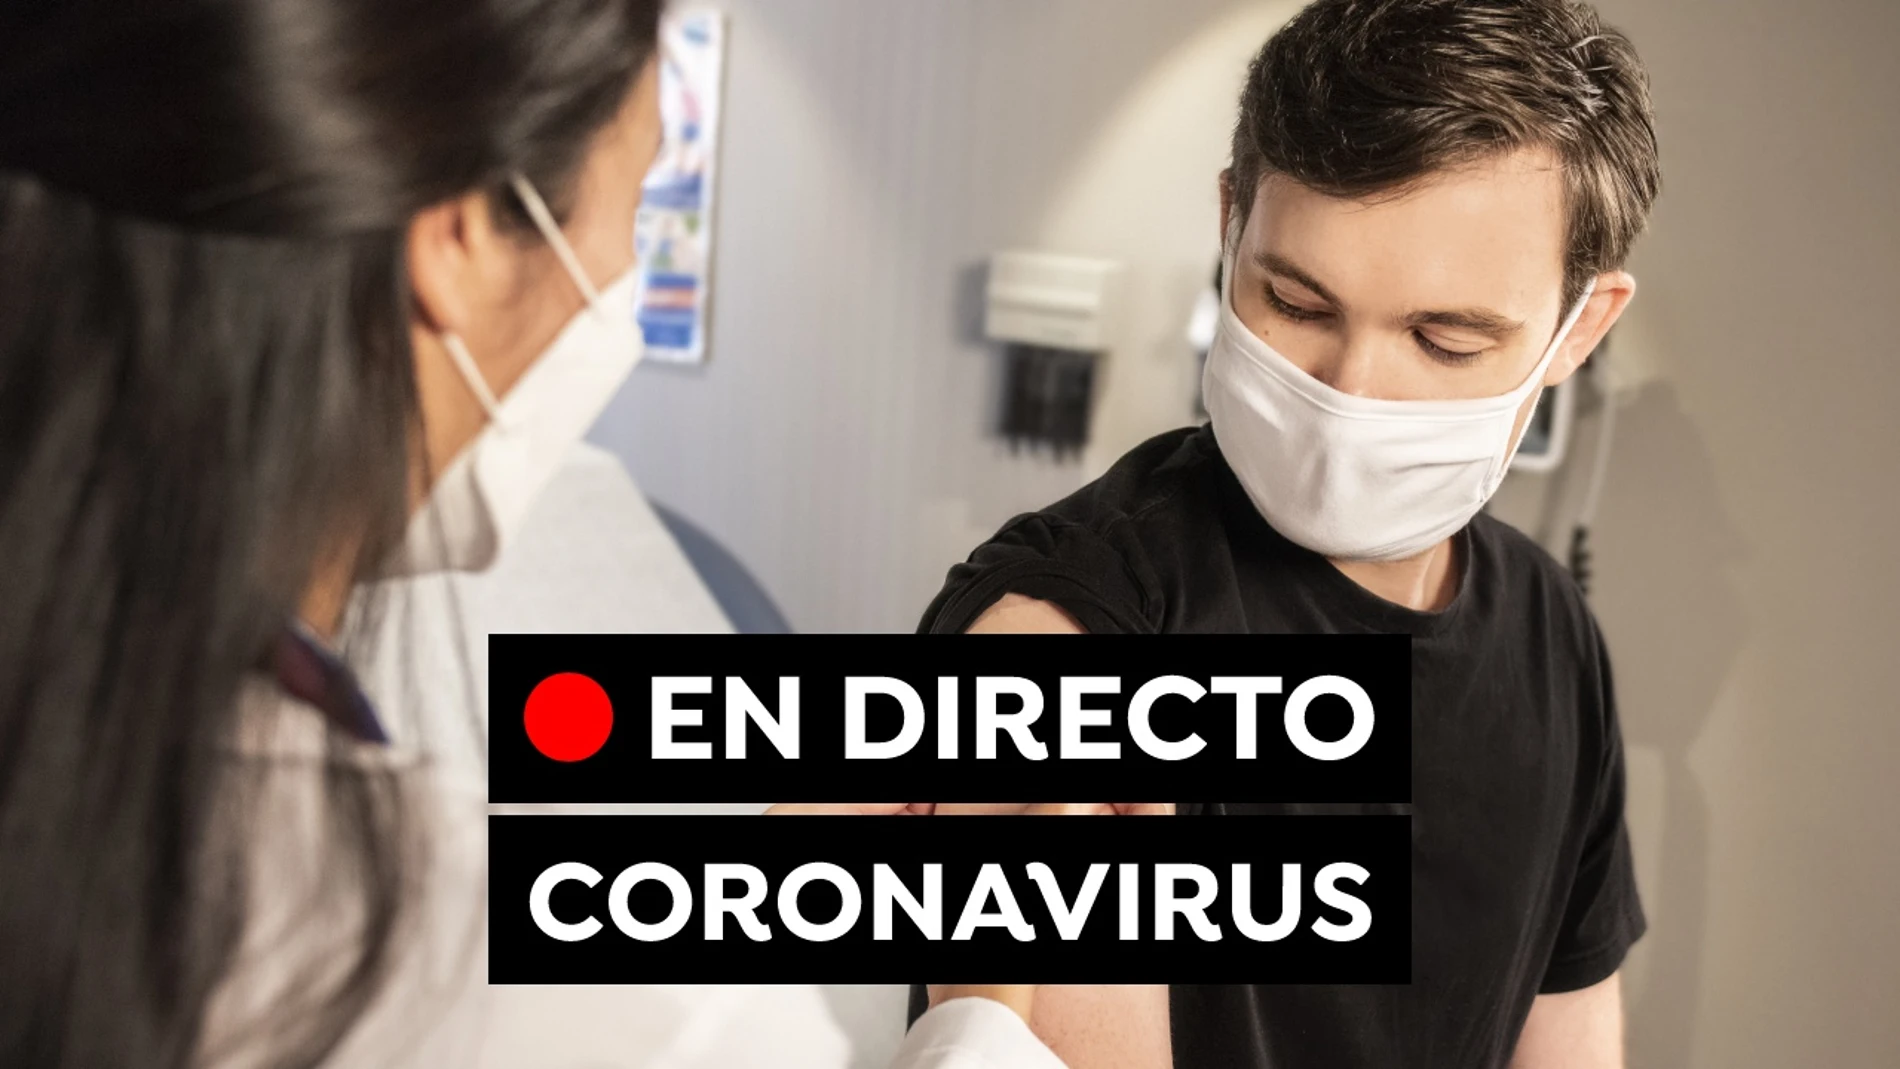 Coronavirus hoy: Restricciones, vacuna contra el covid-19 y últimas noticias en España